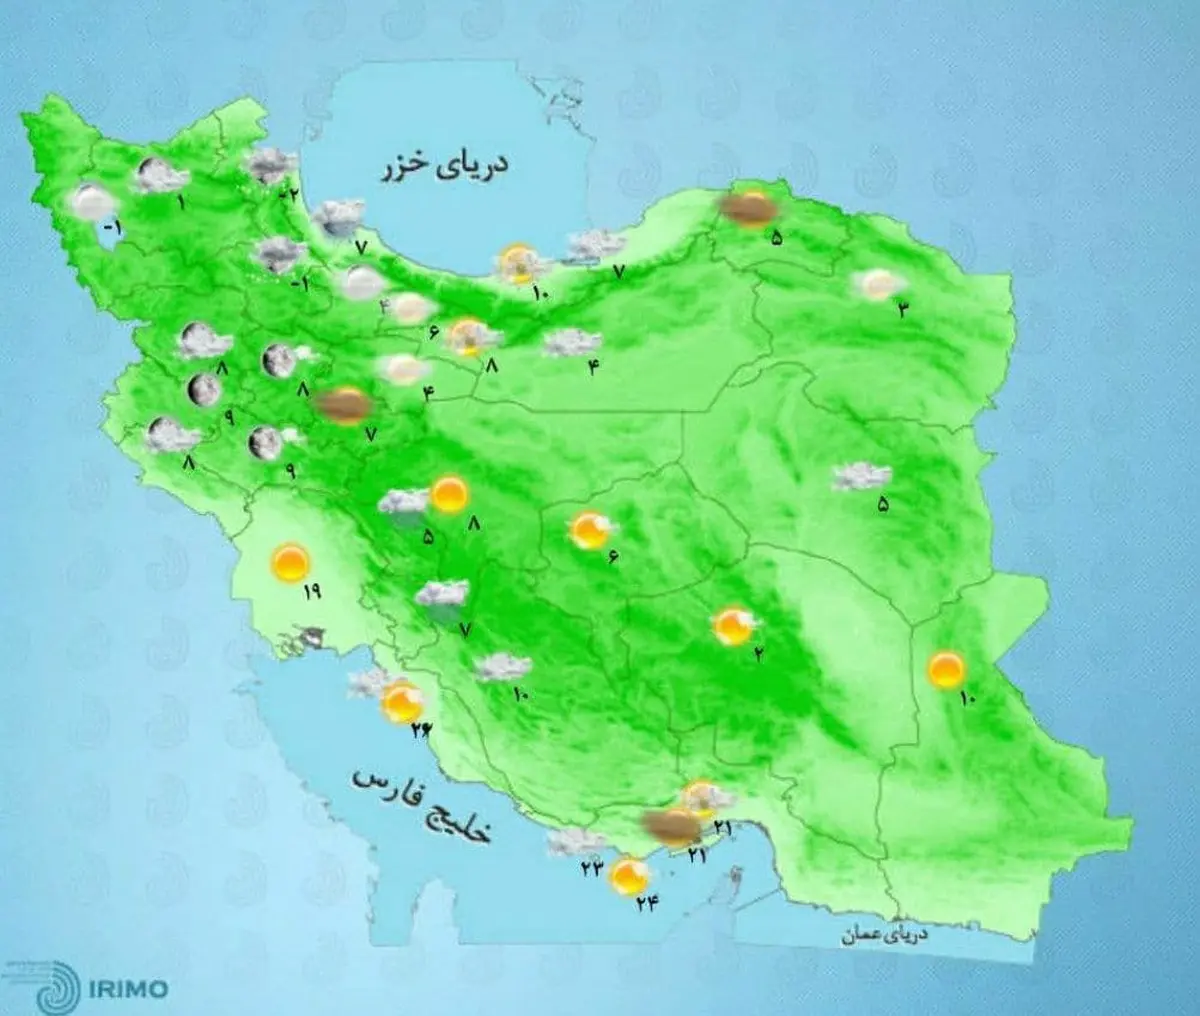  هواشناسی  |  هشدار بارش شدید برف و باران در ۲۱ استان
